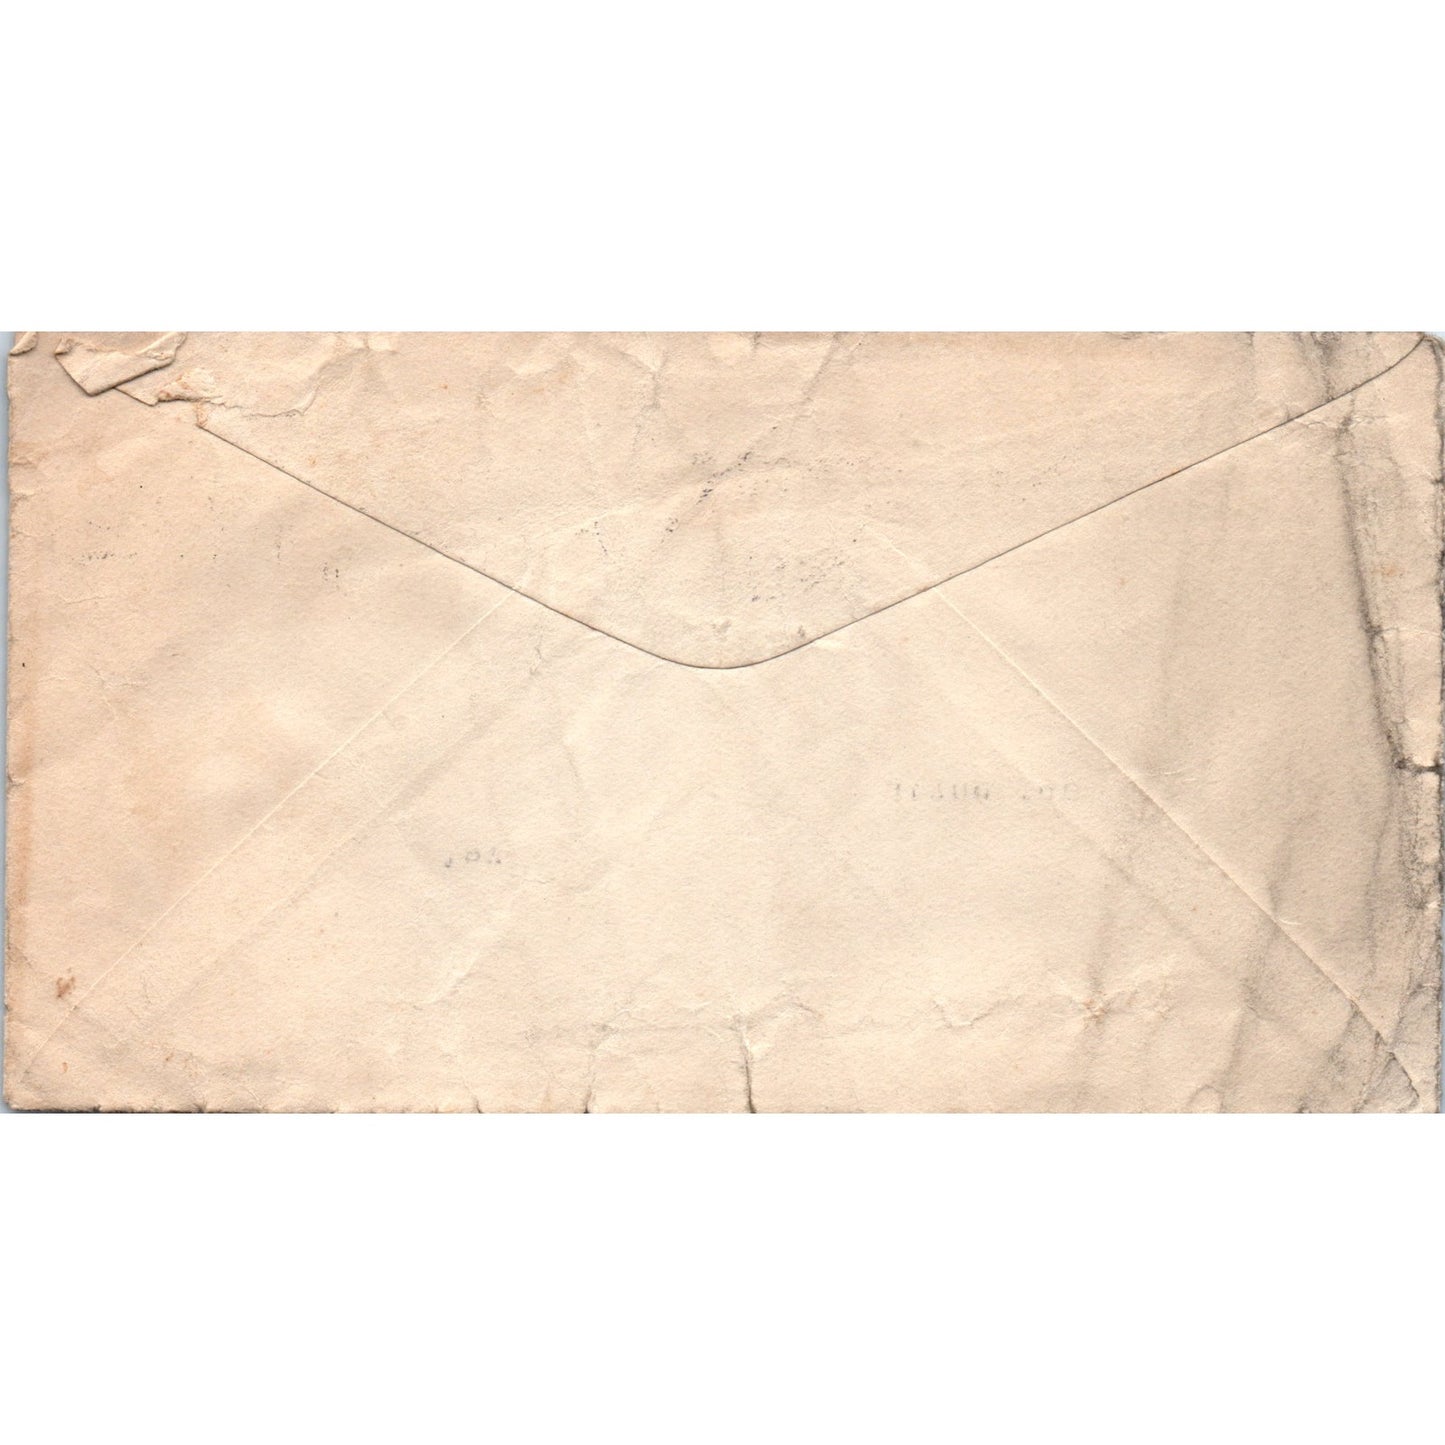 1922 John C. Winston Co Book & Bible Philadelphia Postal Cover Envelope TI5-PC1